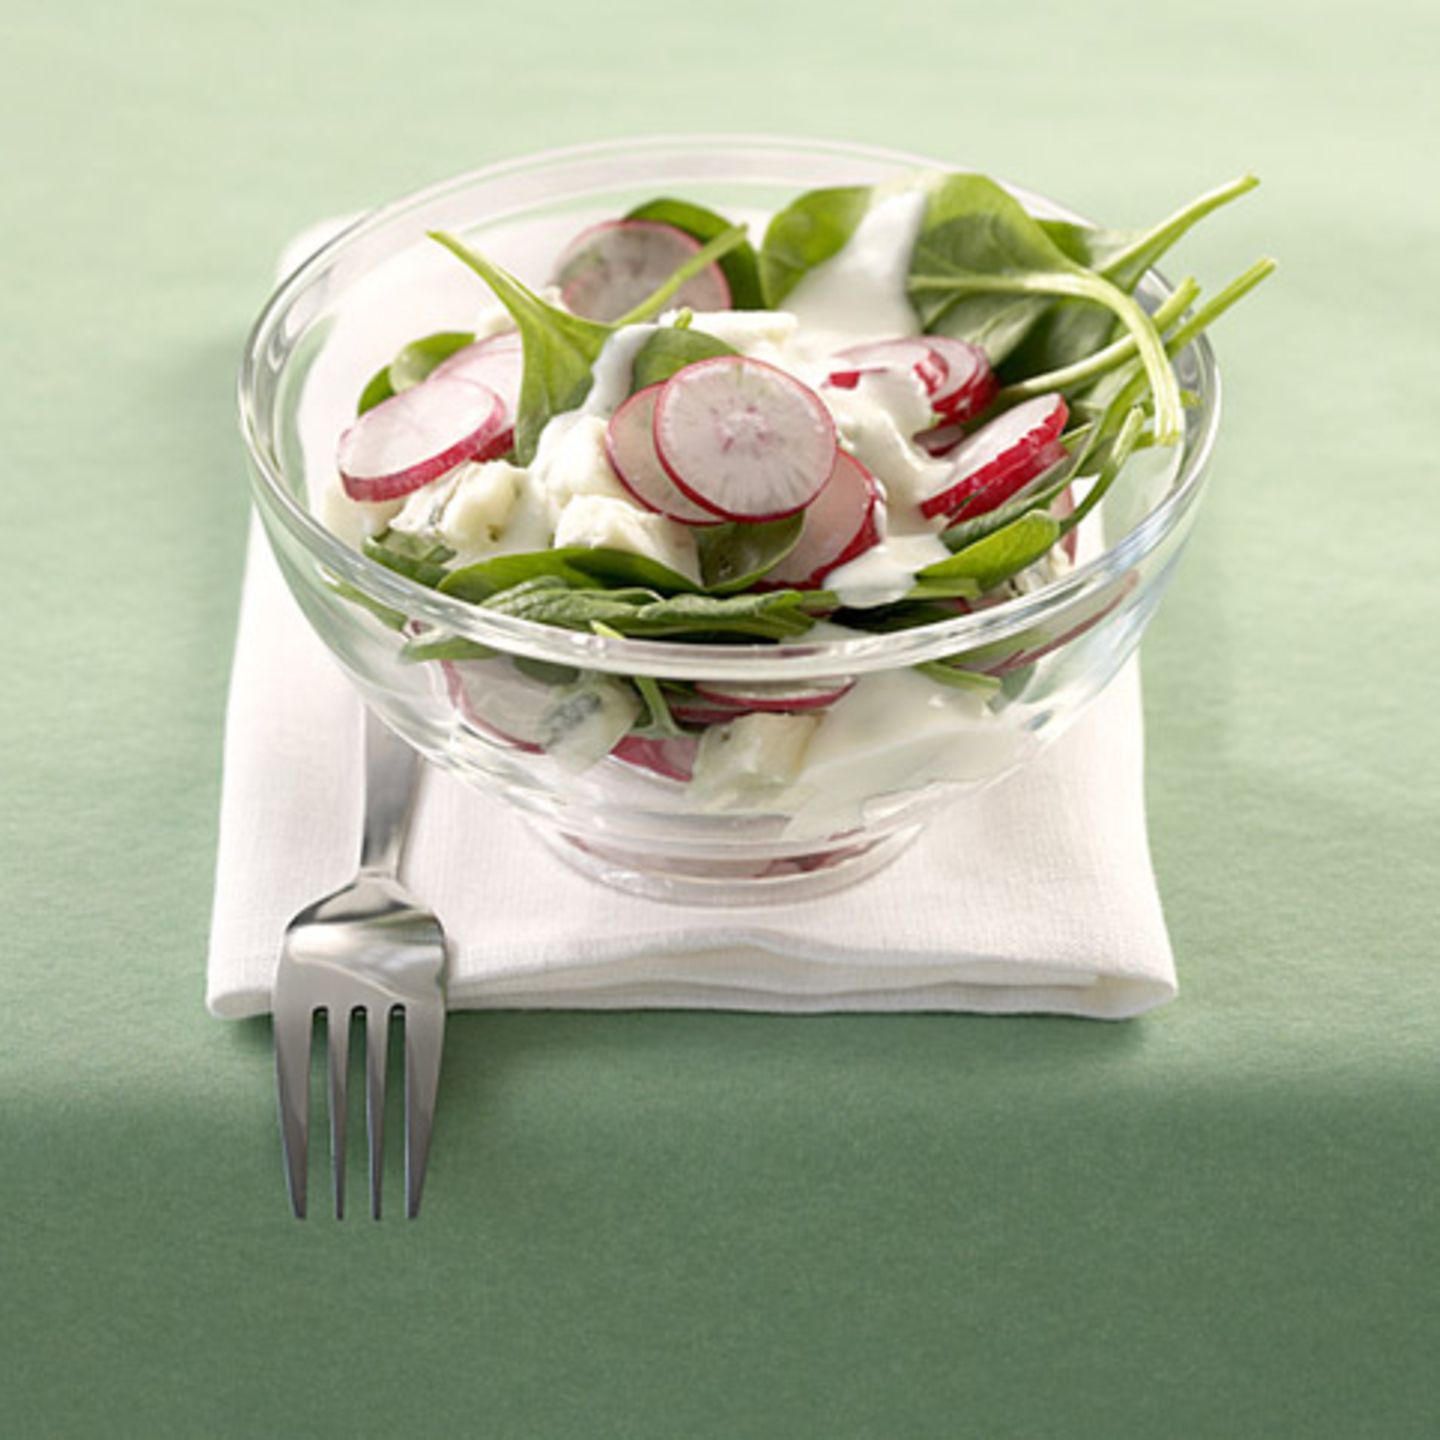 Spinat-Radieschen-Salat